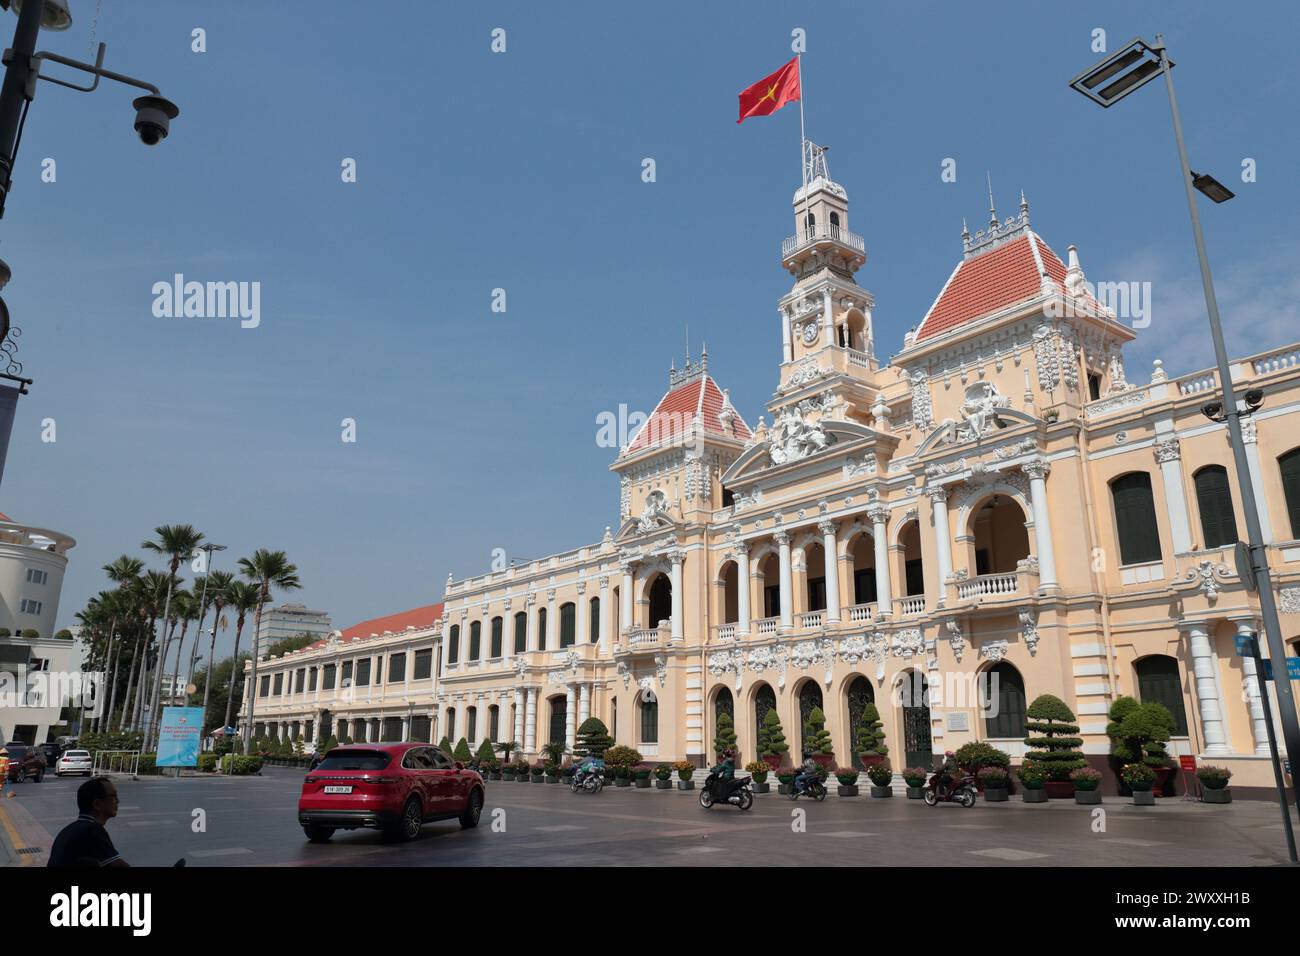 Außenansicht des Peoples Committee Building, Sonnenschein und blauer Himmel, die vietnamesische Nationalflagge fliegt, Ho Chi Minh City (Saigon), Vietnam Stockfoto